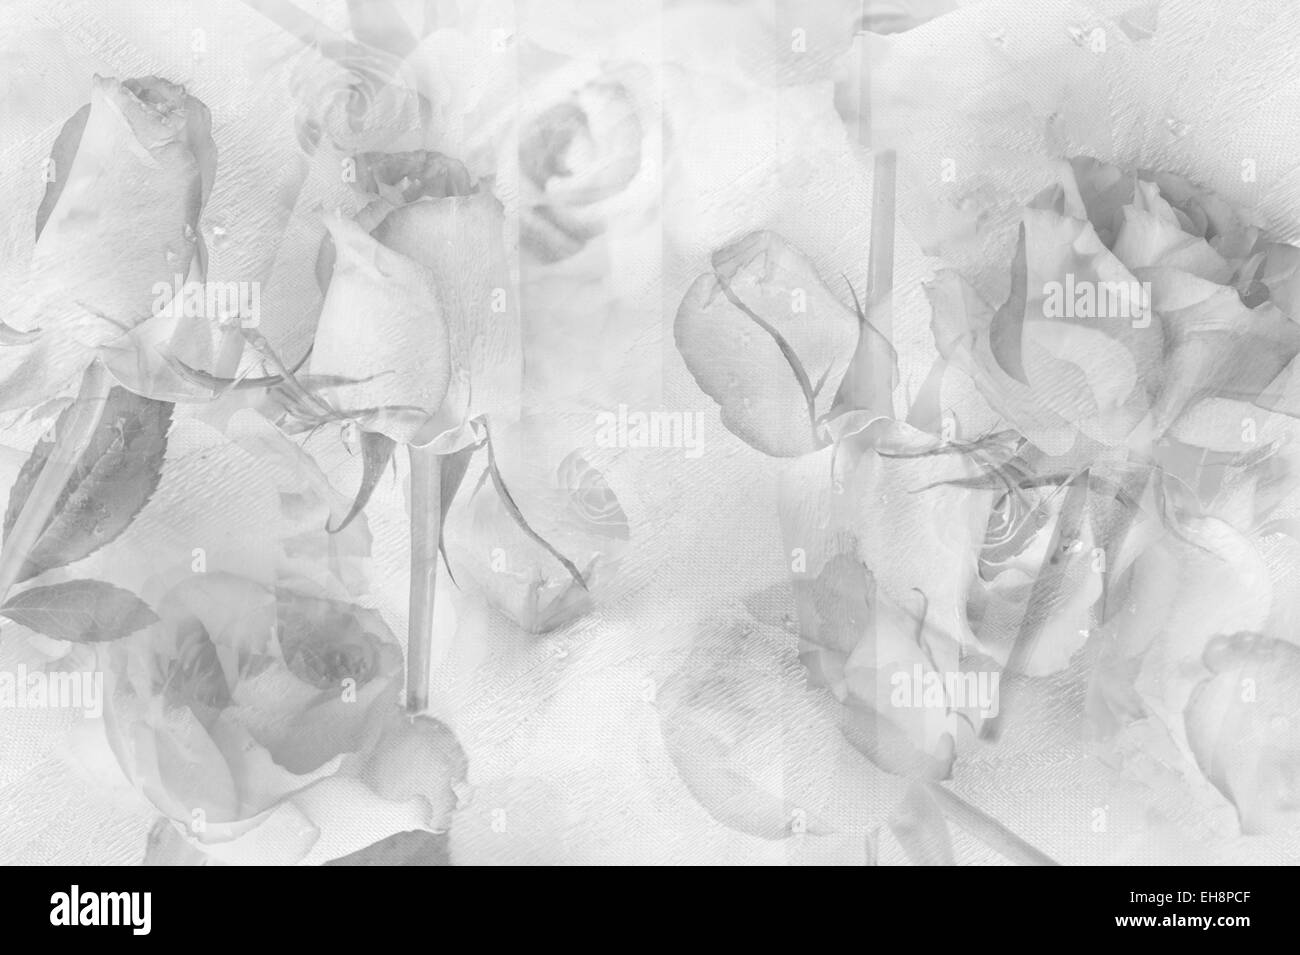 Recht abstrakt Blumen Hintergrund mit Rosen Stockfoto